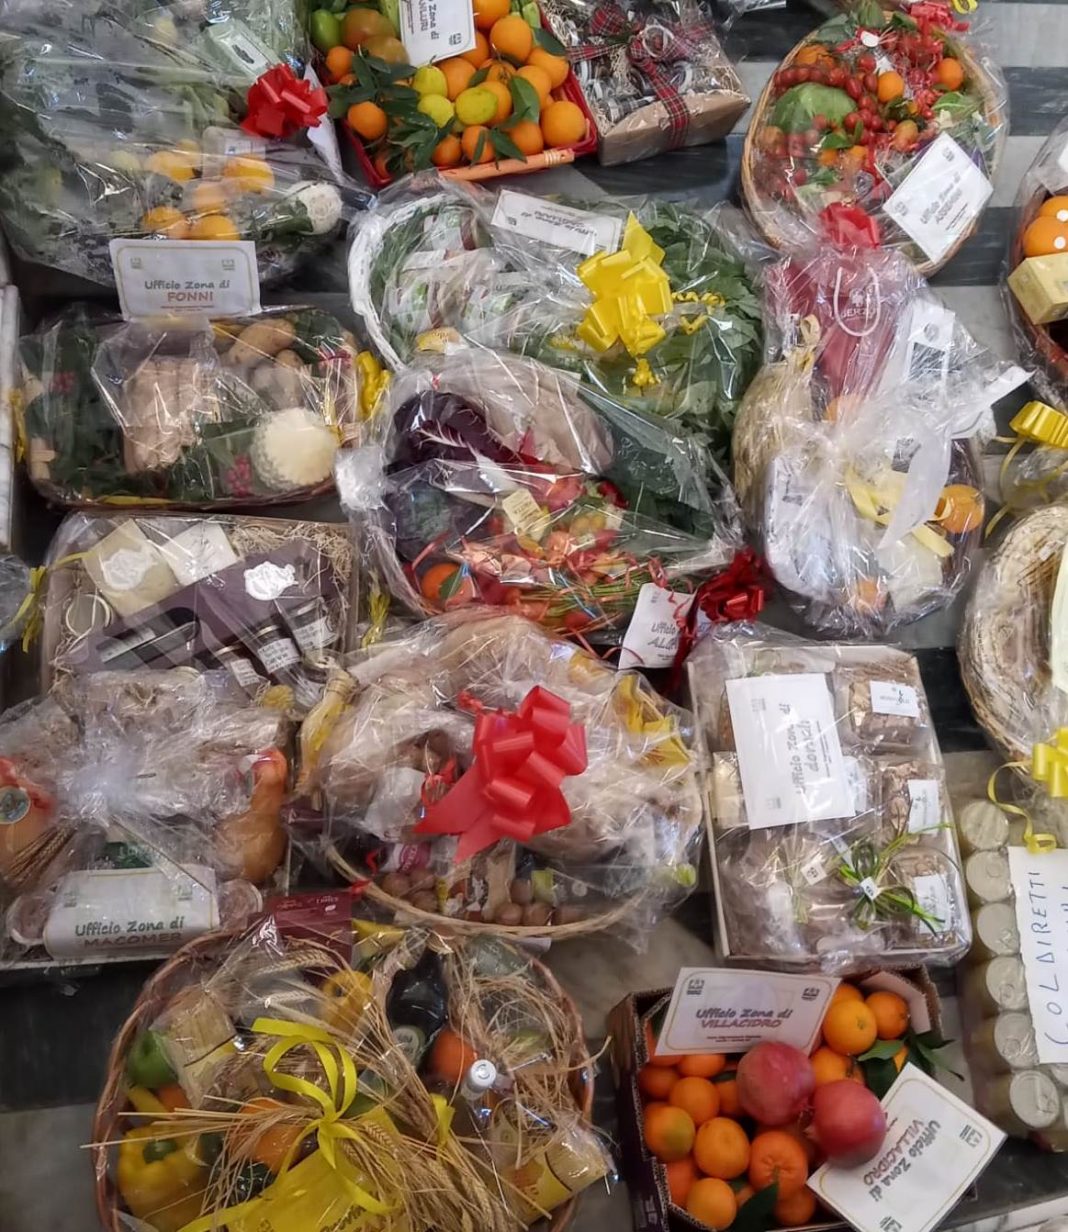 Sardegna, 5 quintali di prodotti agli indigenti nella Giornata del Ringraziamento